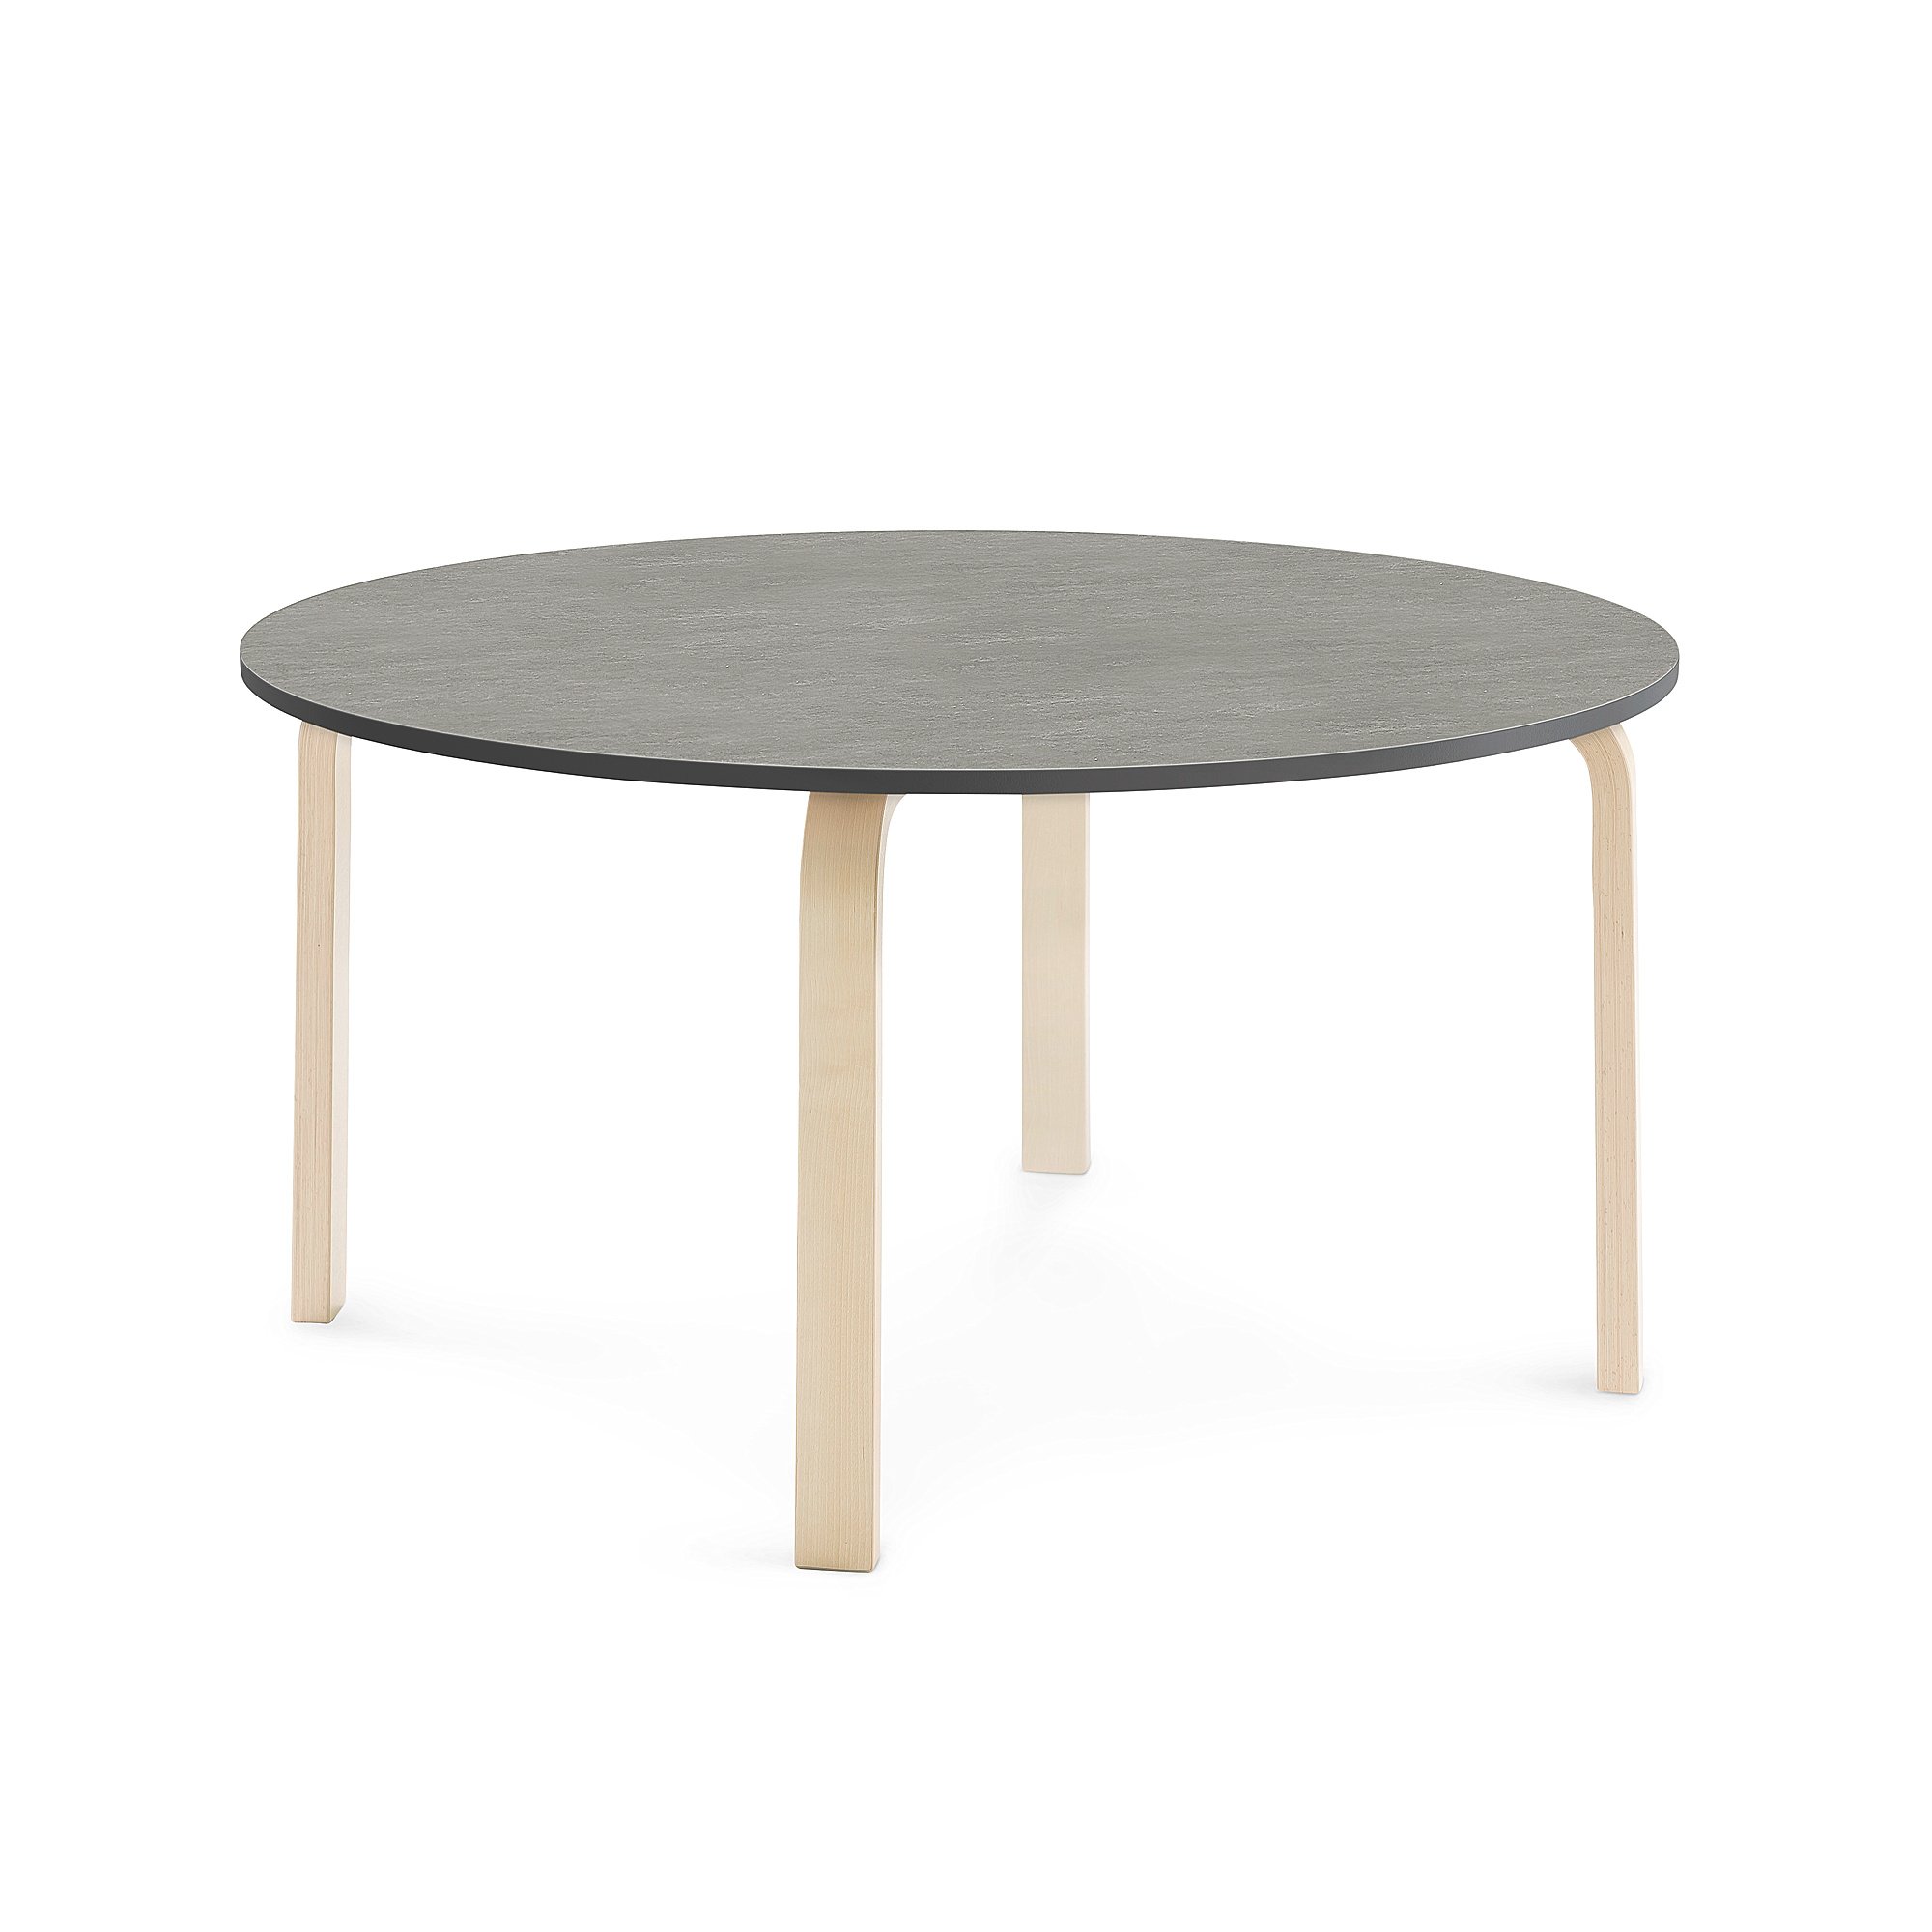 Stůl ELTON, Ø 1200x590 mm, bříza, akustické linoleum, tmavě šedá